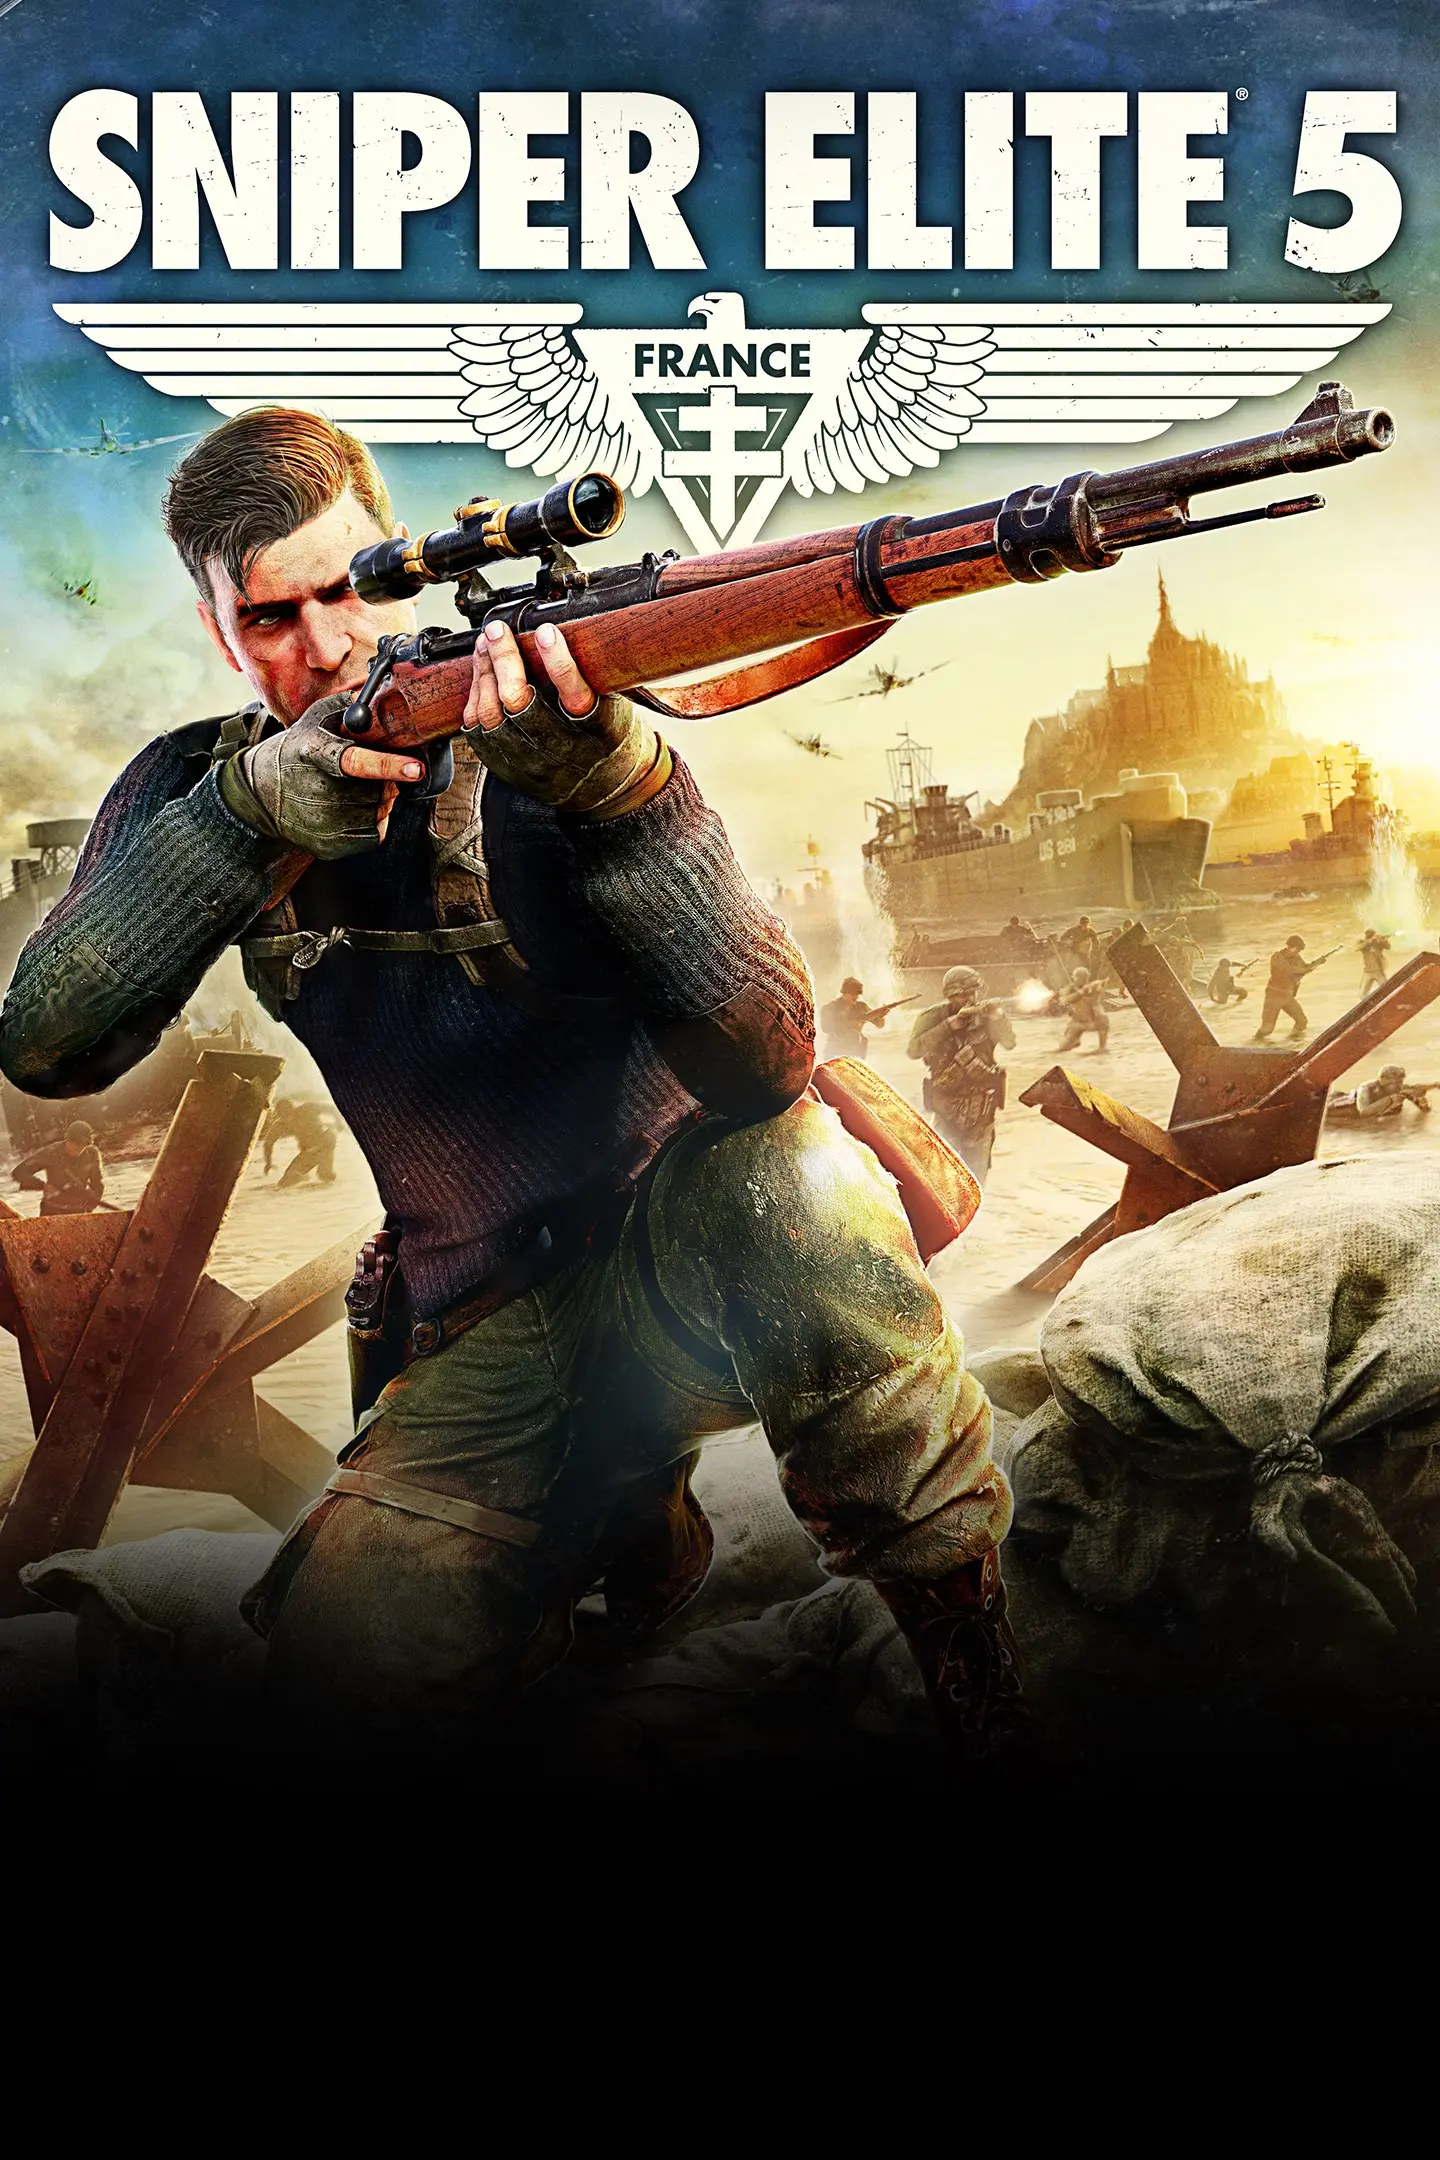 Sniper Elite 5 (EU) (PC) - Steam - Digital Code